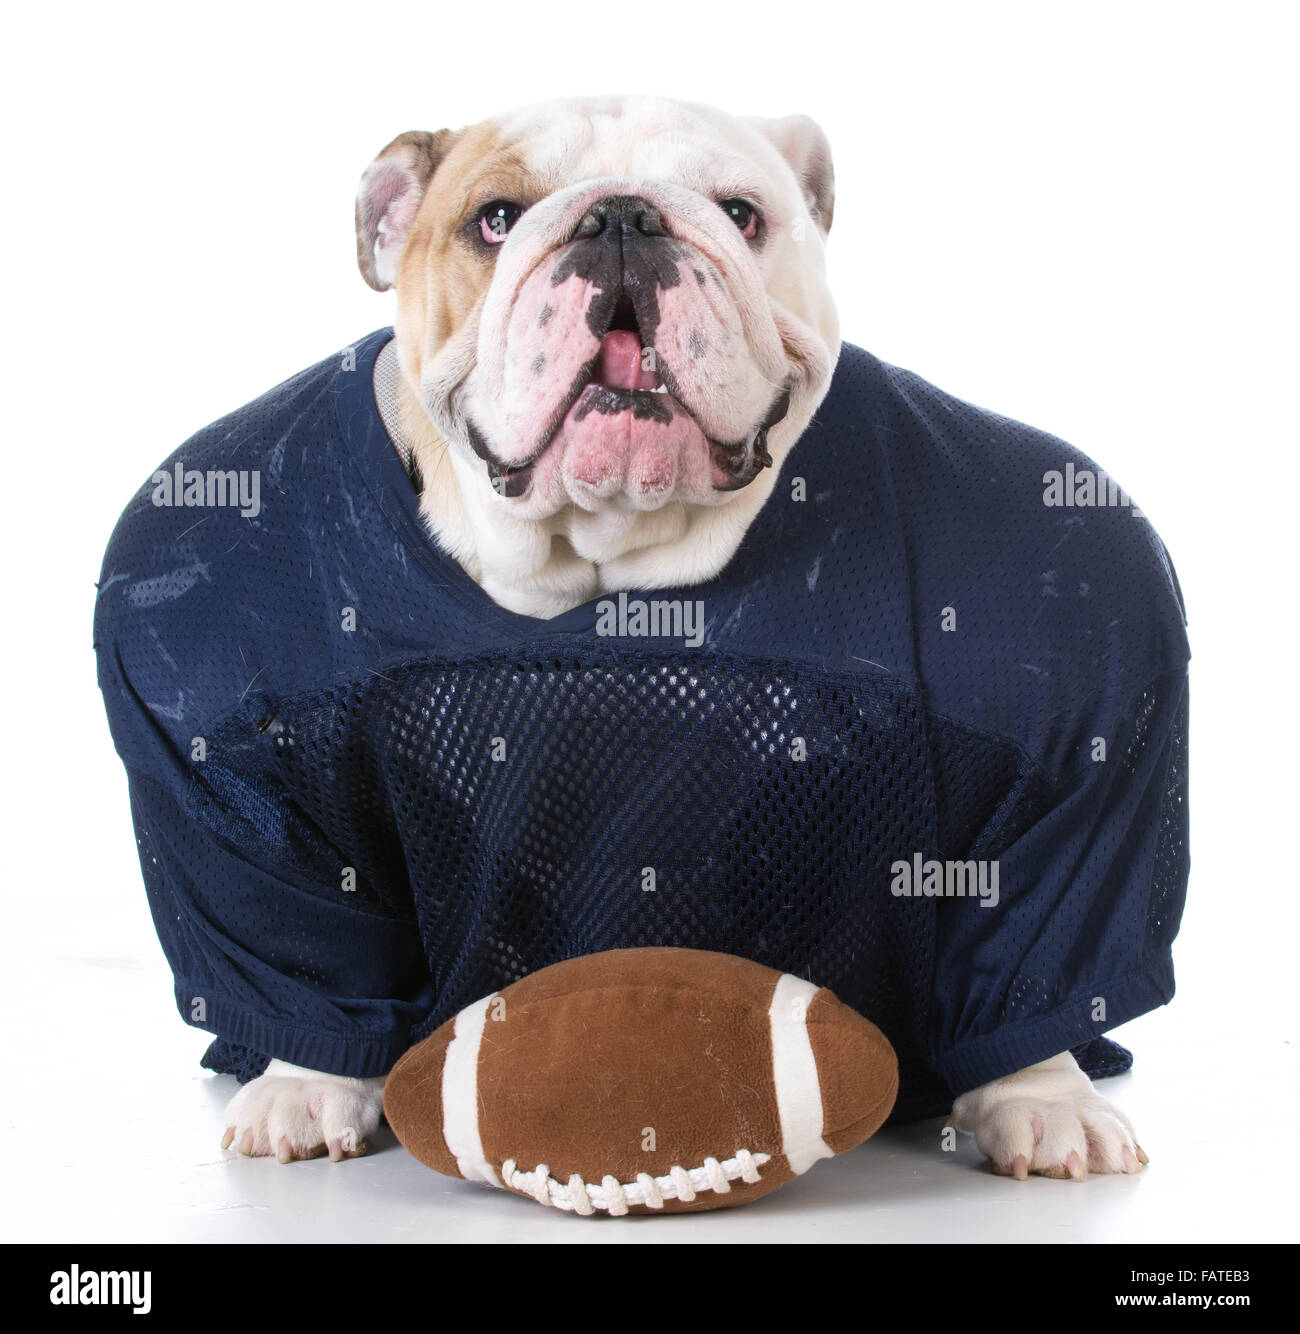 english bulldog wearing football jersey on white background Stock Photo -  Alamy